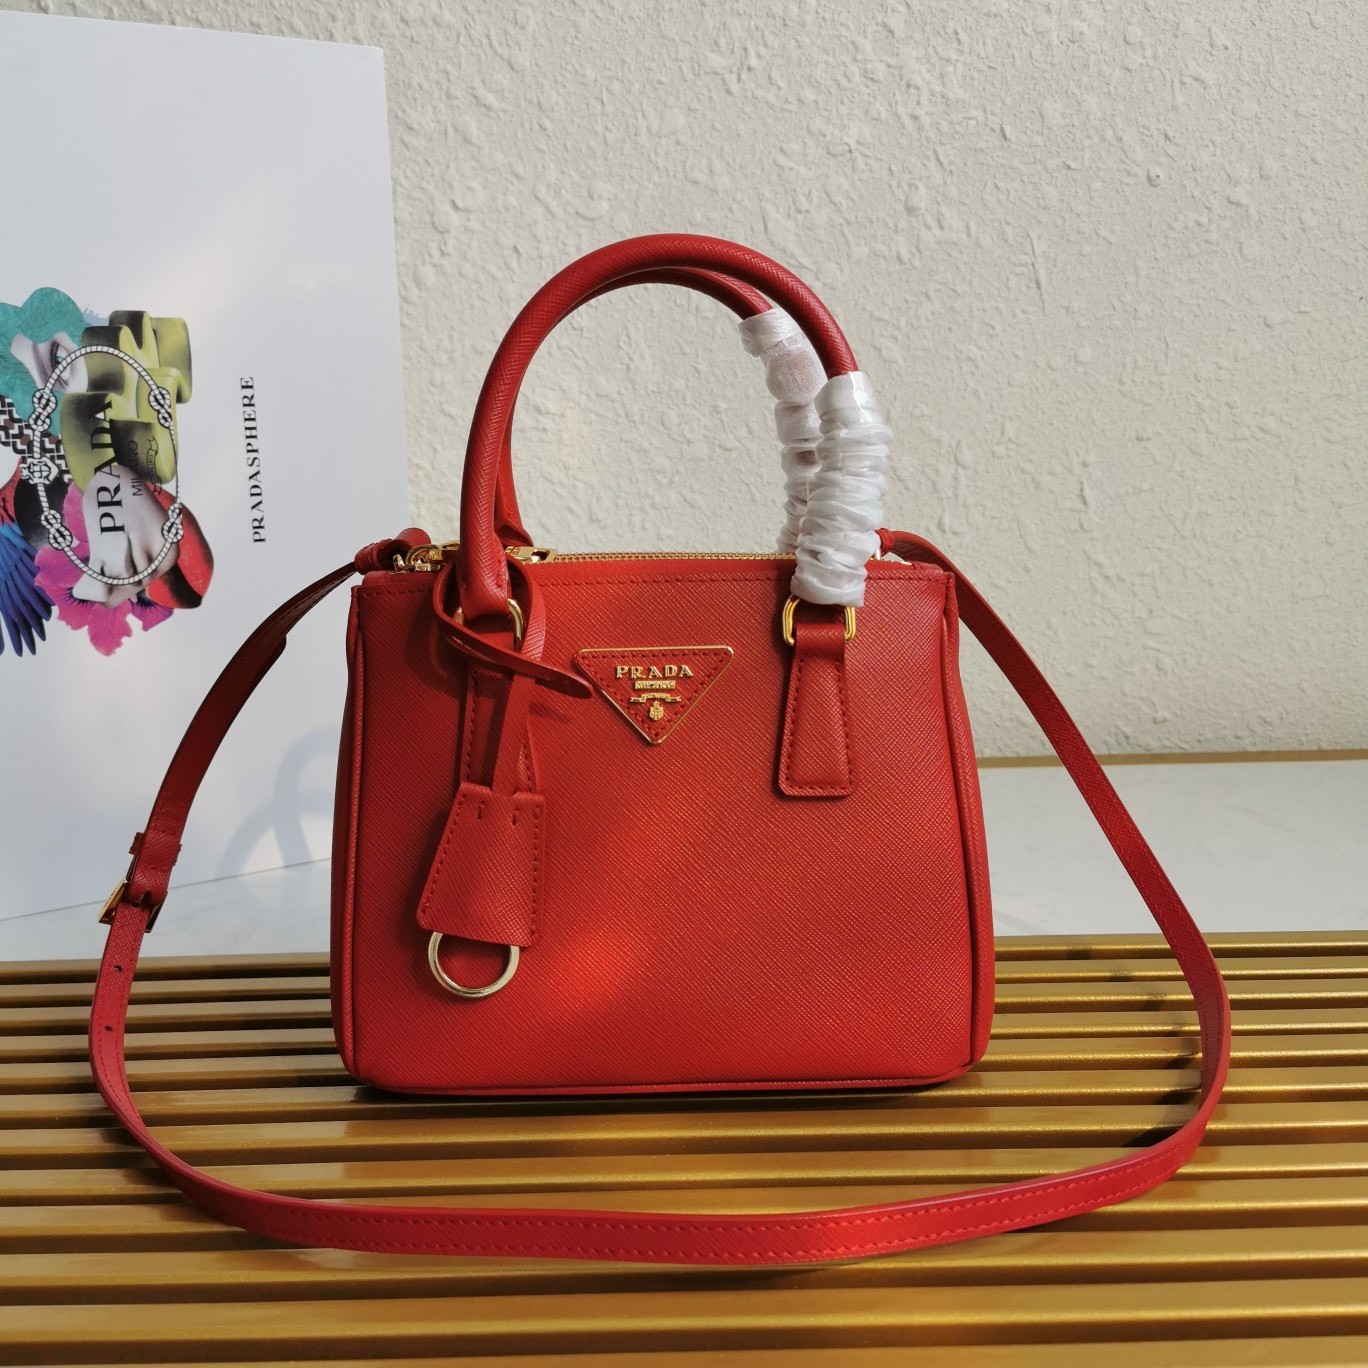 Prada Mini Galleria Bag In Red Saffiano Leather 203